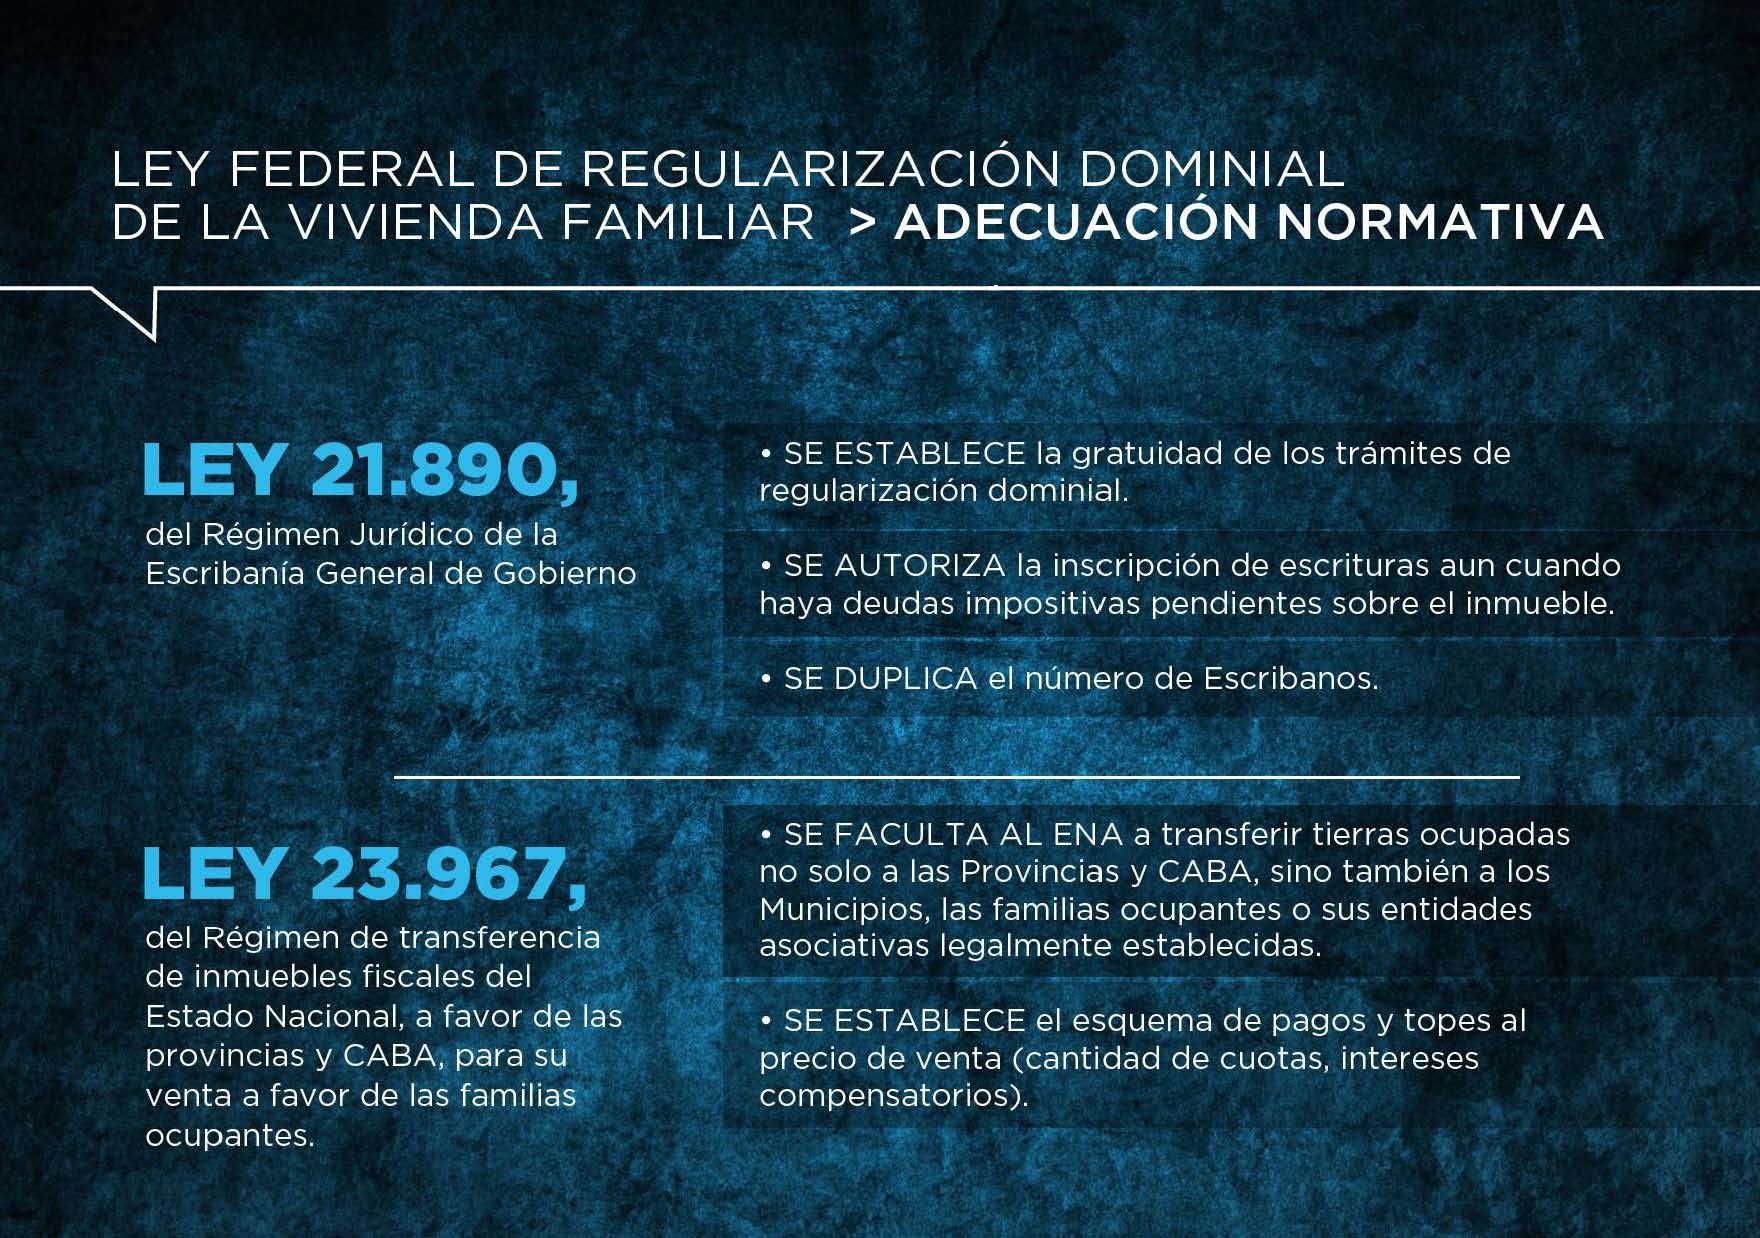 Presentamos el Plan Federal de Regularización Dominial de la Vivienda Familiar 